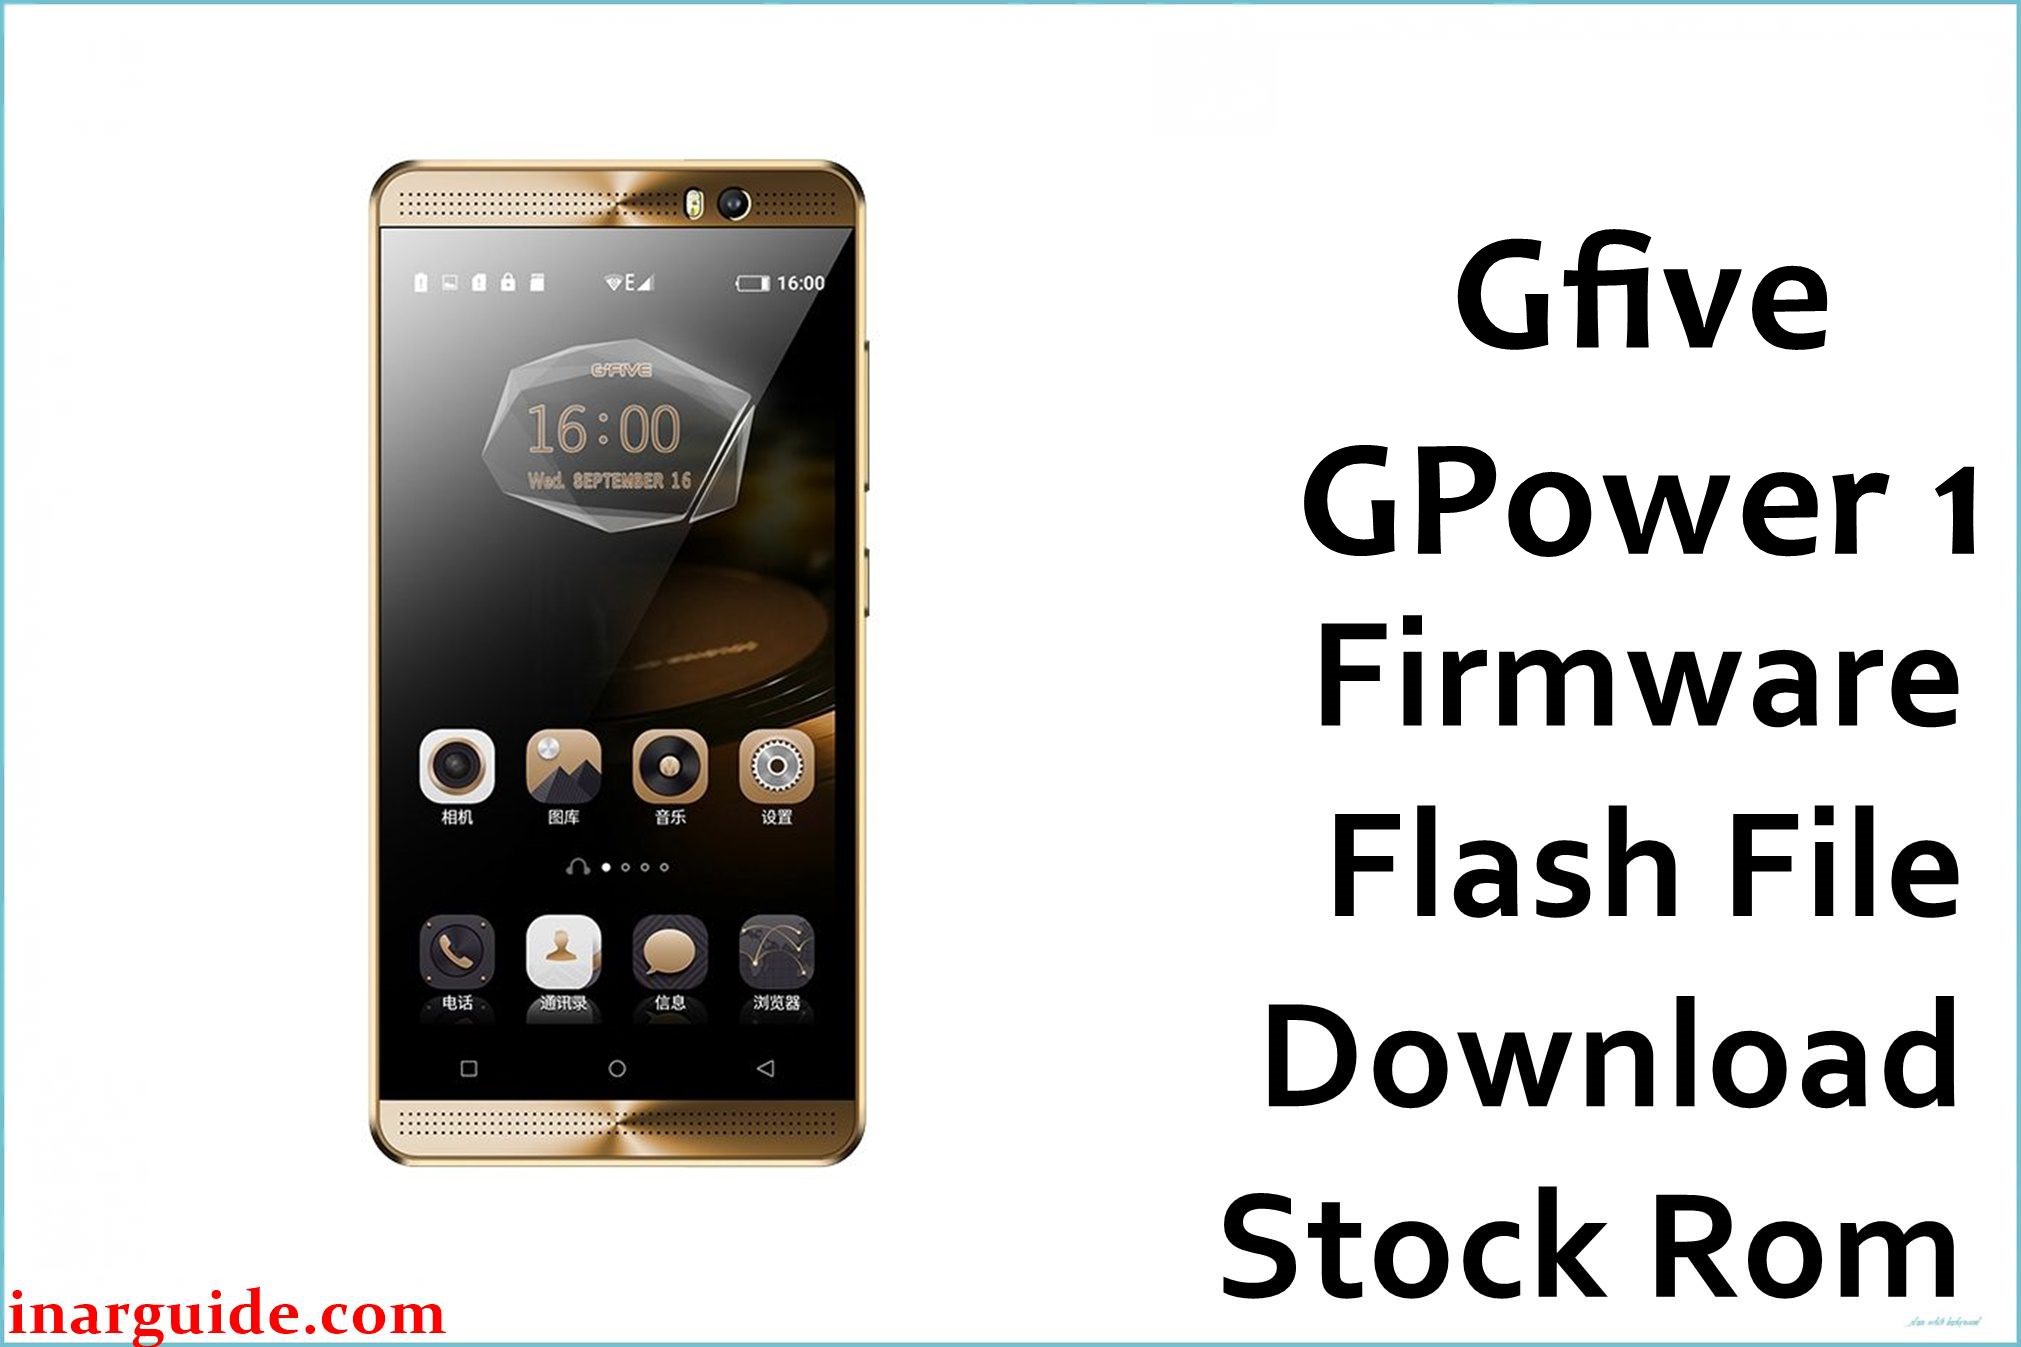 Gfive GPower 1